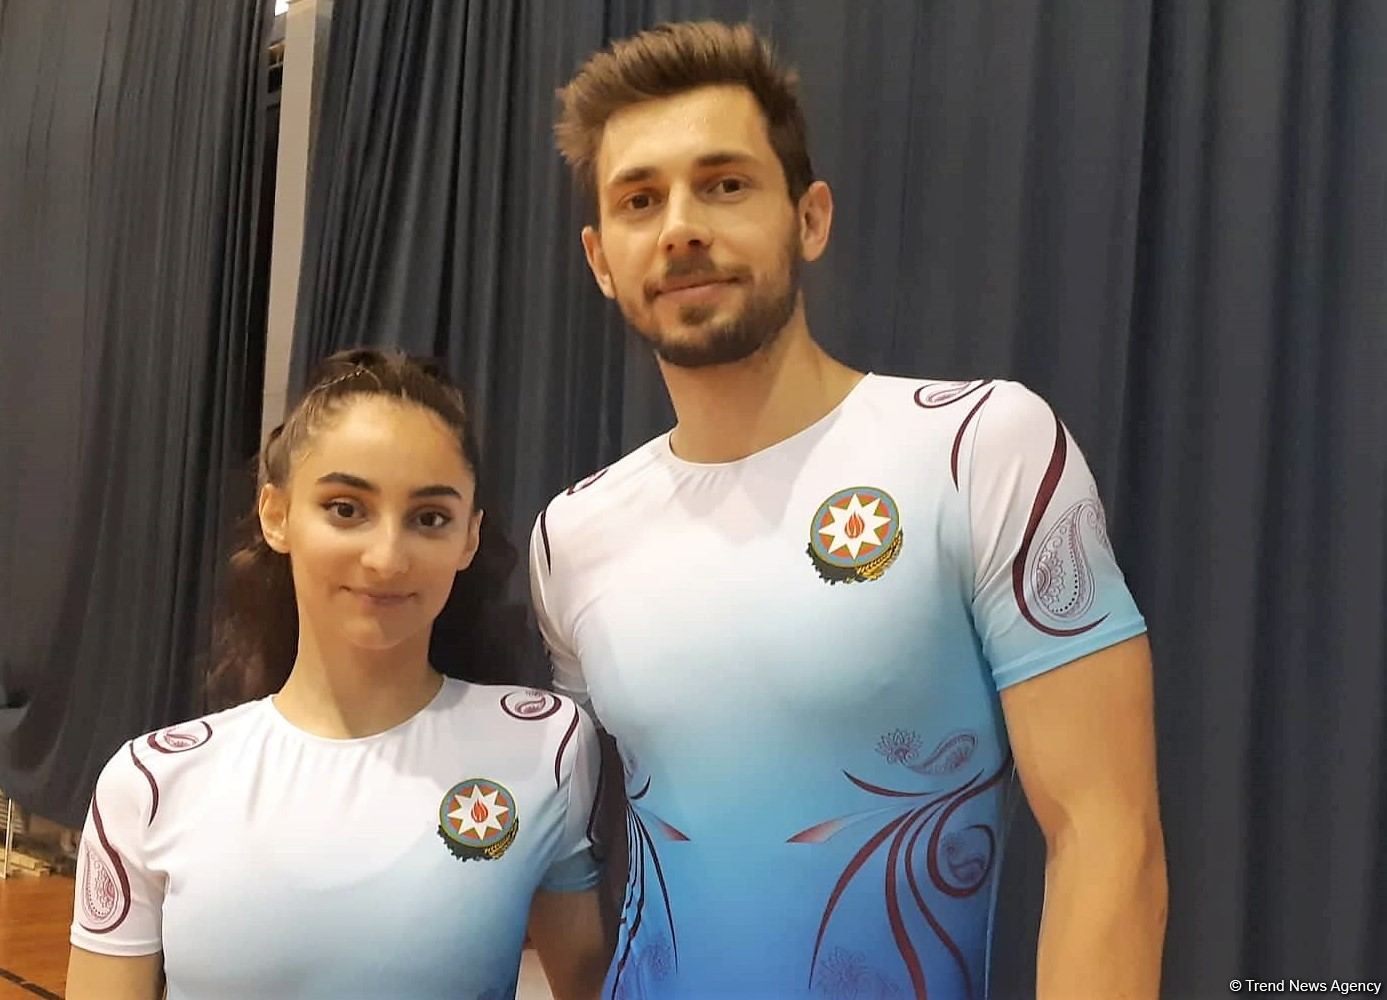 Azərbaycan gimnastları qarışıq cütlükdə tərkibində İslamiadanın qızıl medalını qazanıblar